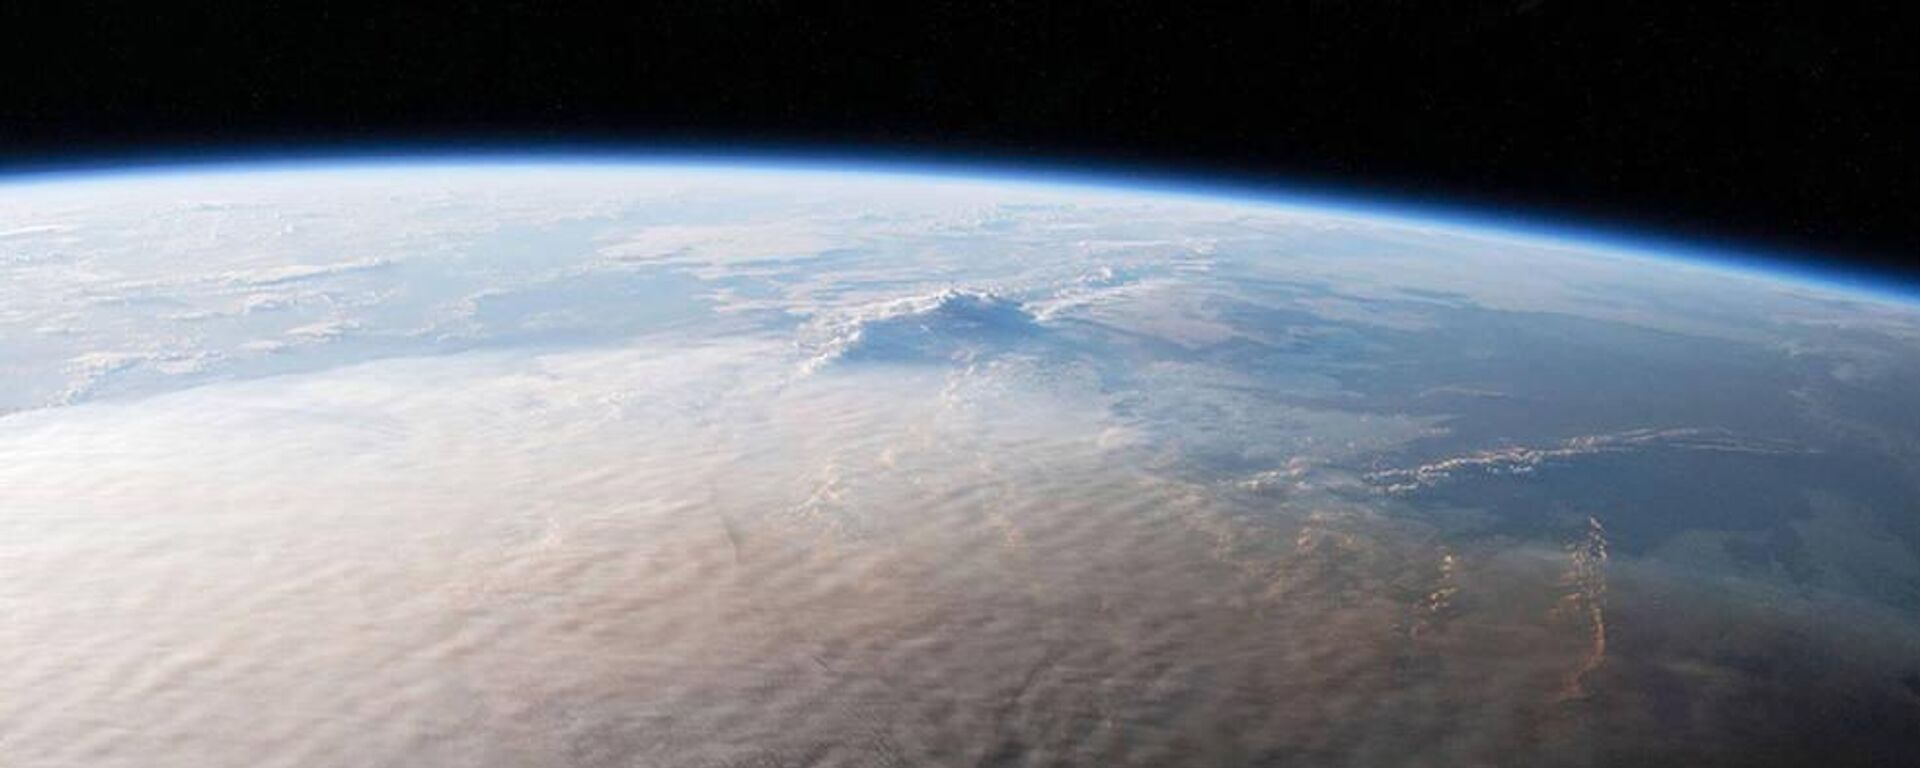 Remanentes de la erupción del volcán Tonga captados desde el espacio. - Sputnik Mundo, 1920, 29.11.2022